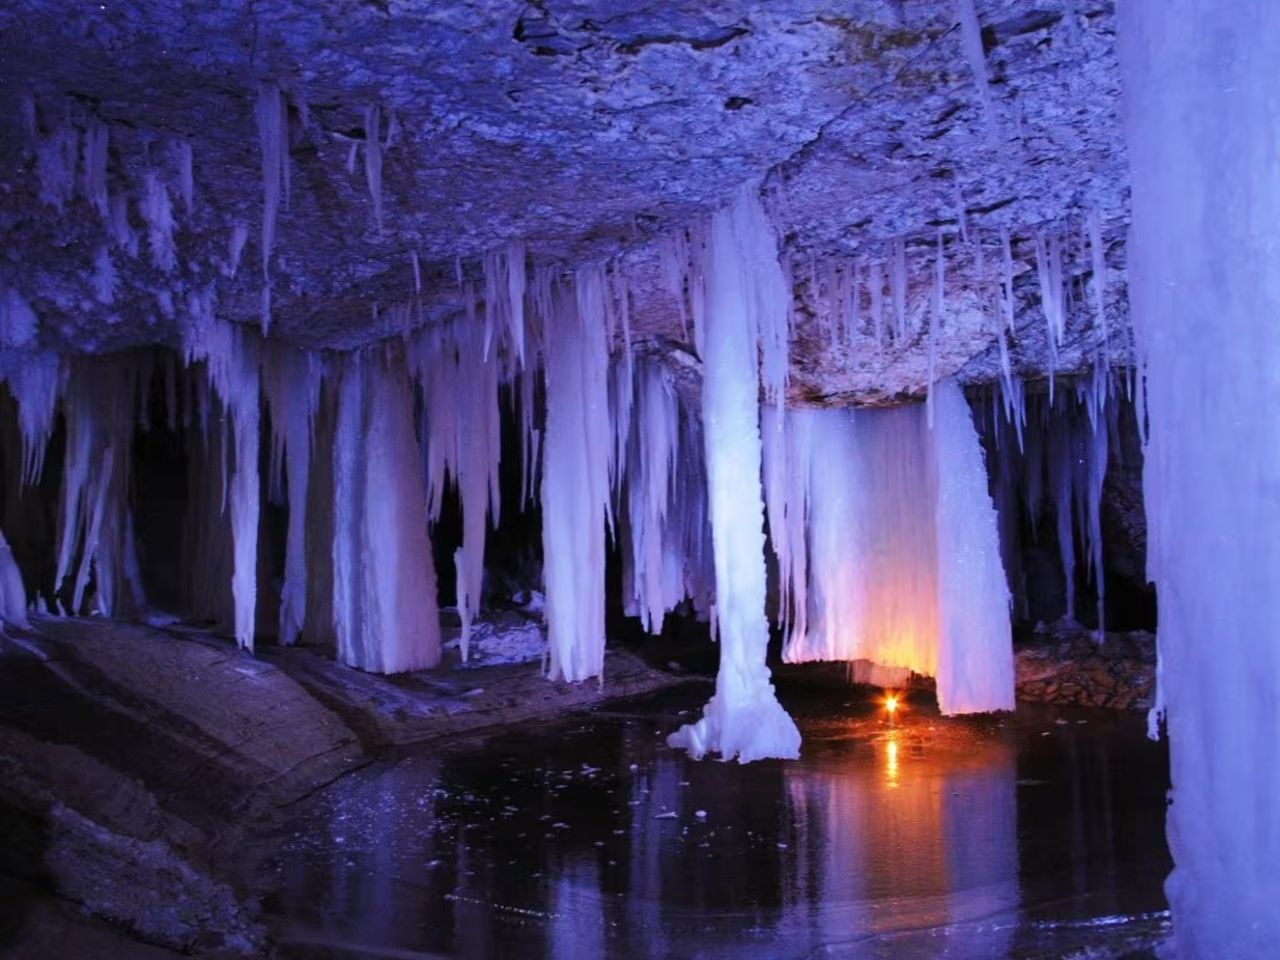 В царство ледяных пещер | Цена 20000₽, отзывы, описание экскурсии